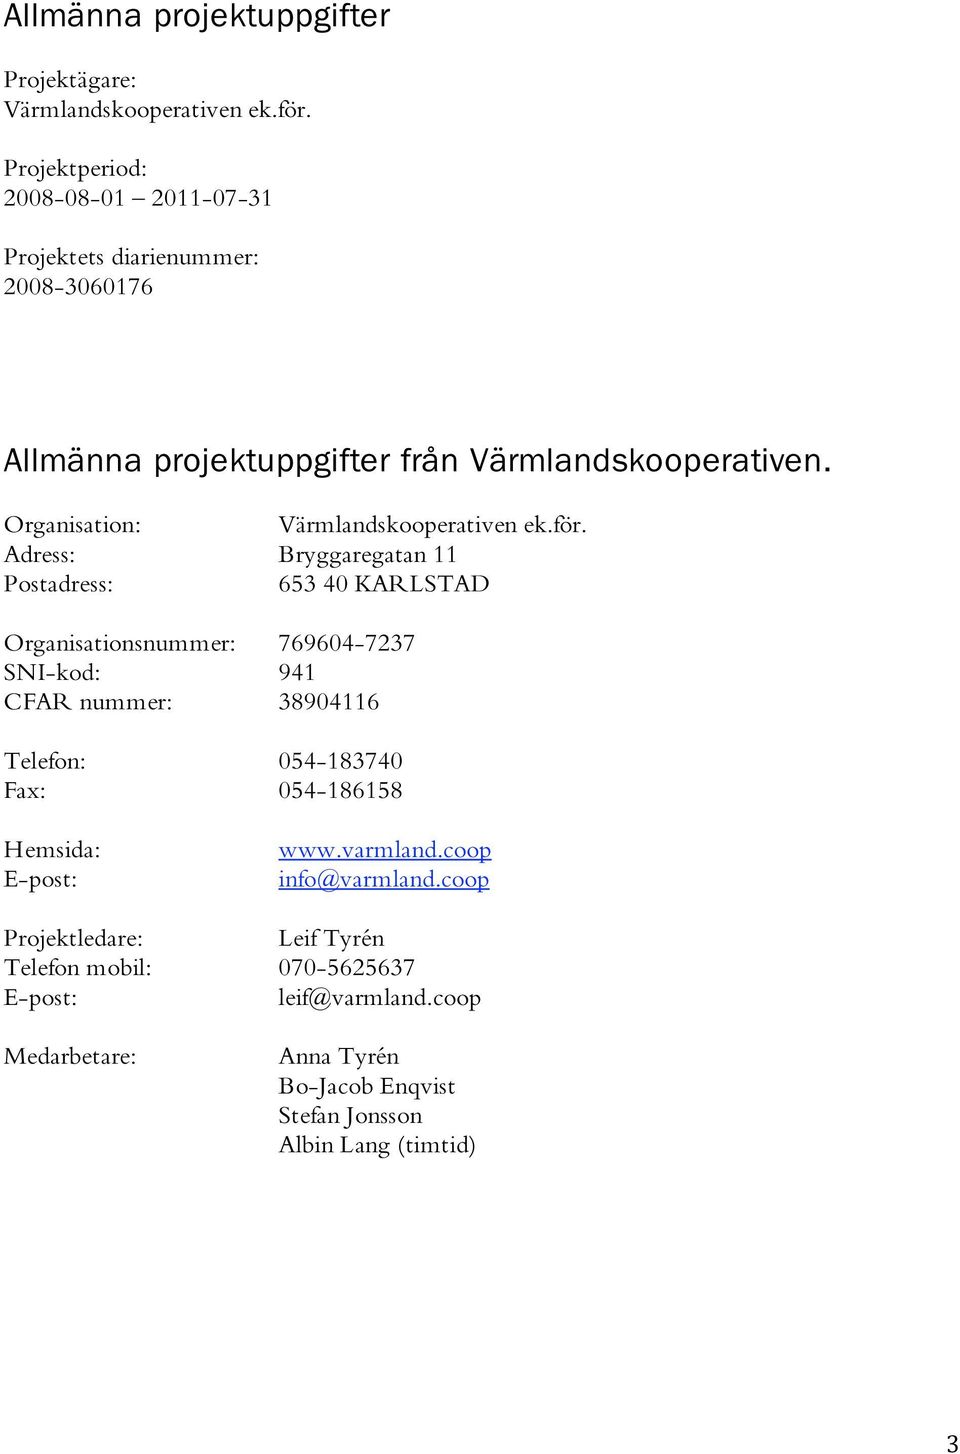 Organisation: Värmlandskooperativen ek.för.